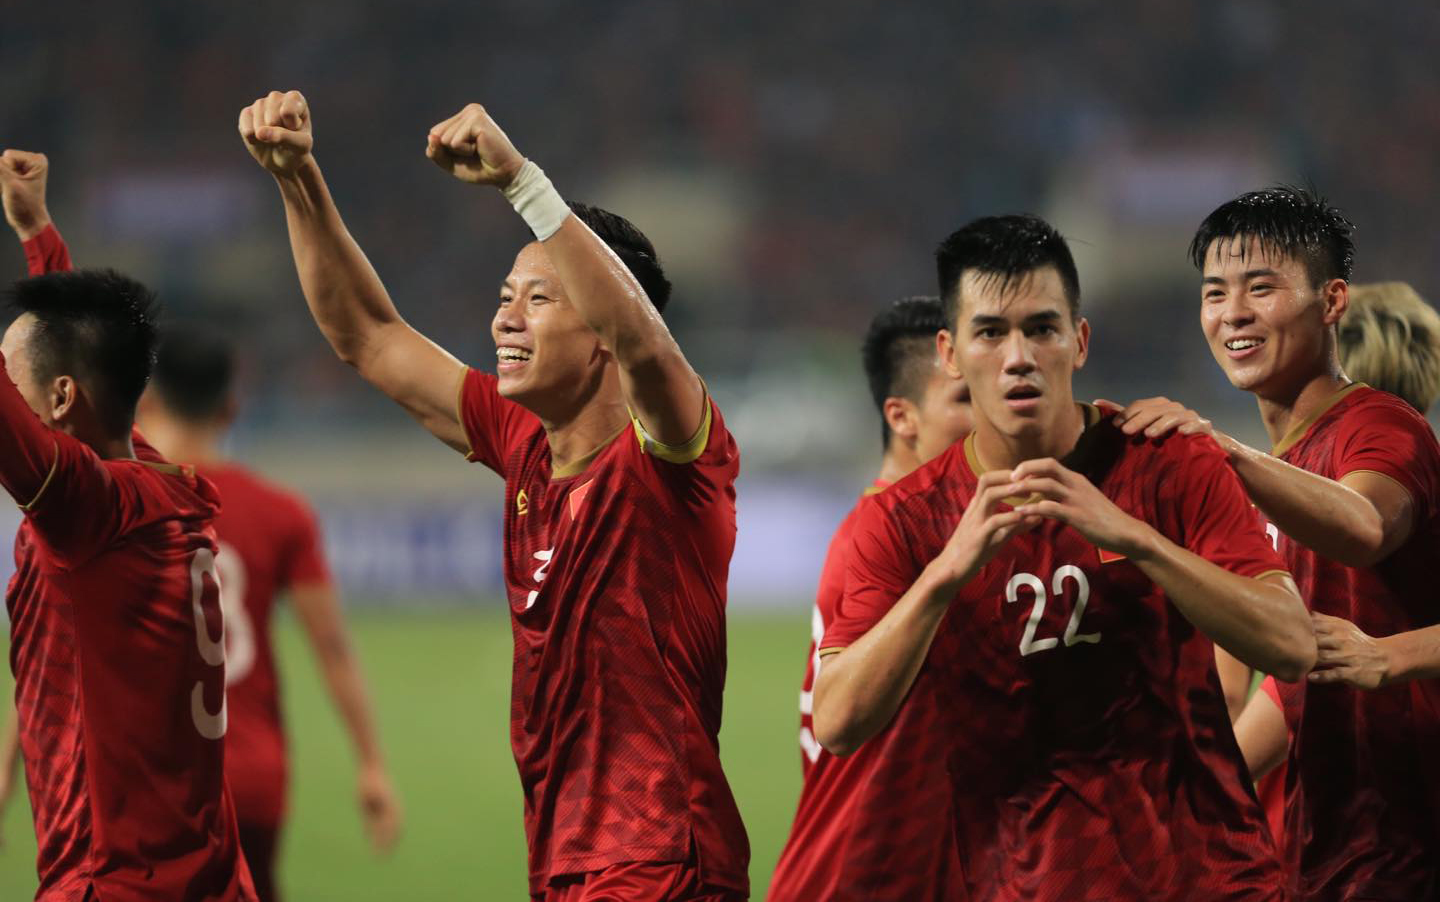 Để có được niềm vui như đã có tại vòng loại (thứ 2) World Cup 2022 (ảnh), đội tuyển Việt Nam cần được tạo điều kiện tốt nhất trong quá trình chuẩn bị trước khi bước vào vòng loại cuối cùng (khu vực châu Á) World Cup 2022.  						     Ảnh: ĐỨC CƯỜNG